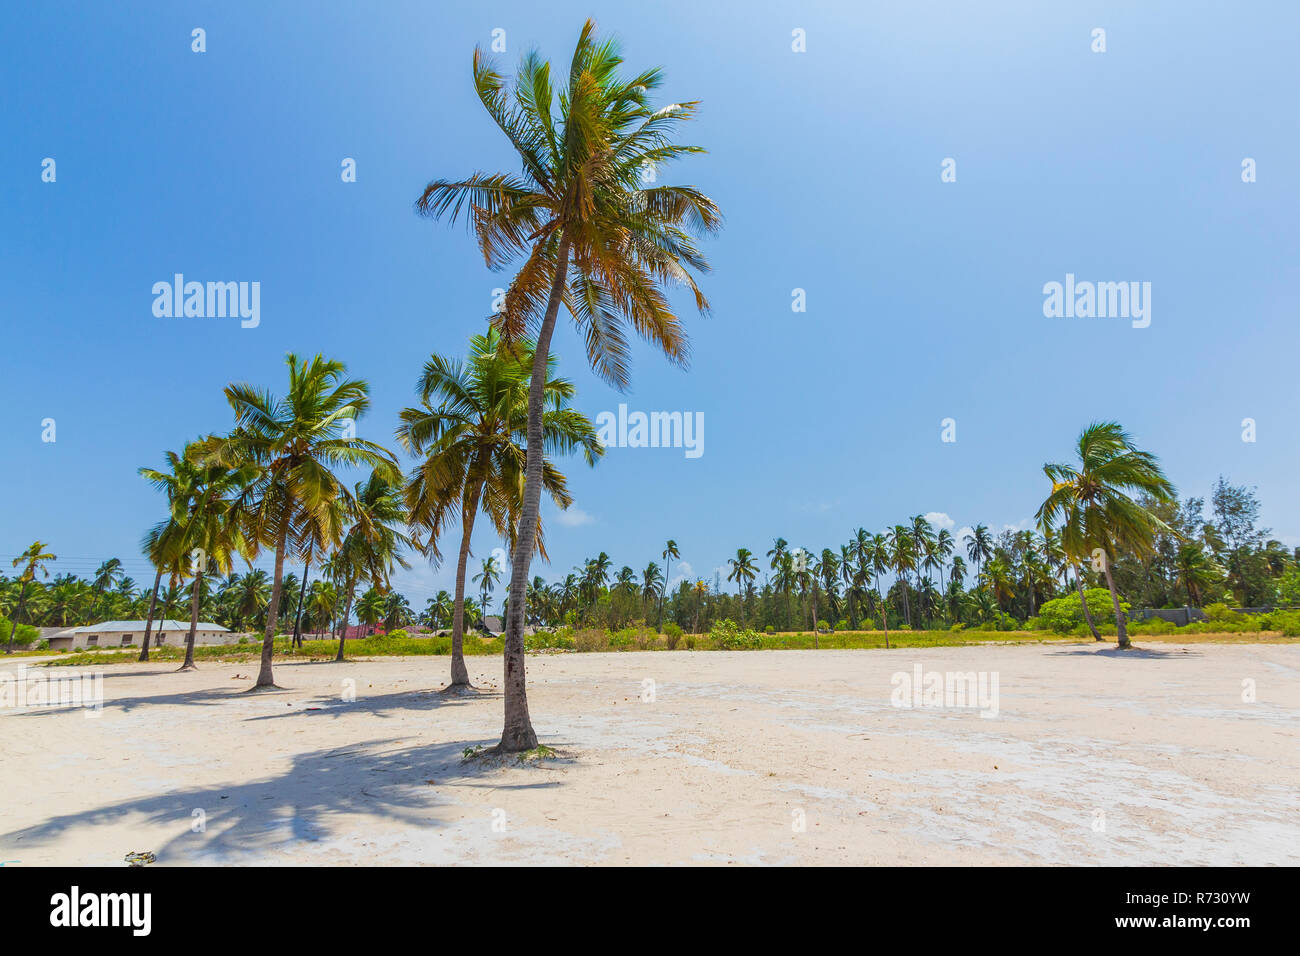 Attraktive tropische Outback Landschaft mit hohen Palmen im weißen Sand gegen einen klaren, blauen Himmel und ein kleines Dorf im Hintergrund Stockfoto